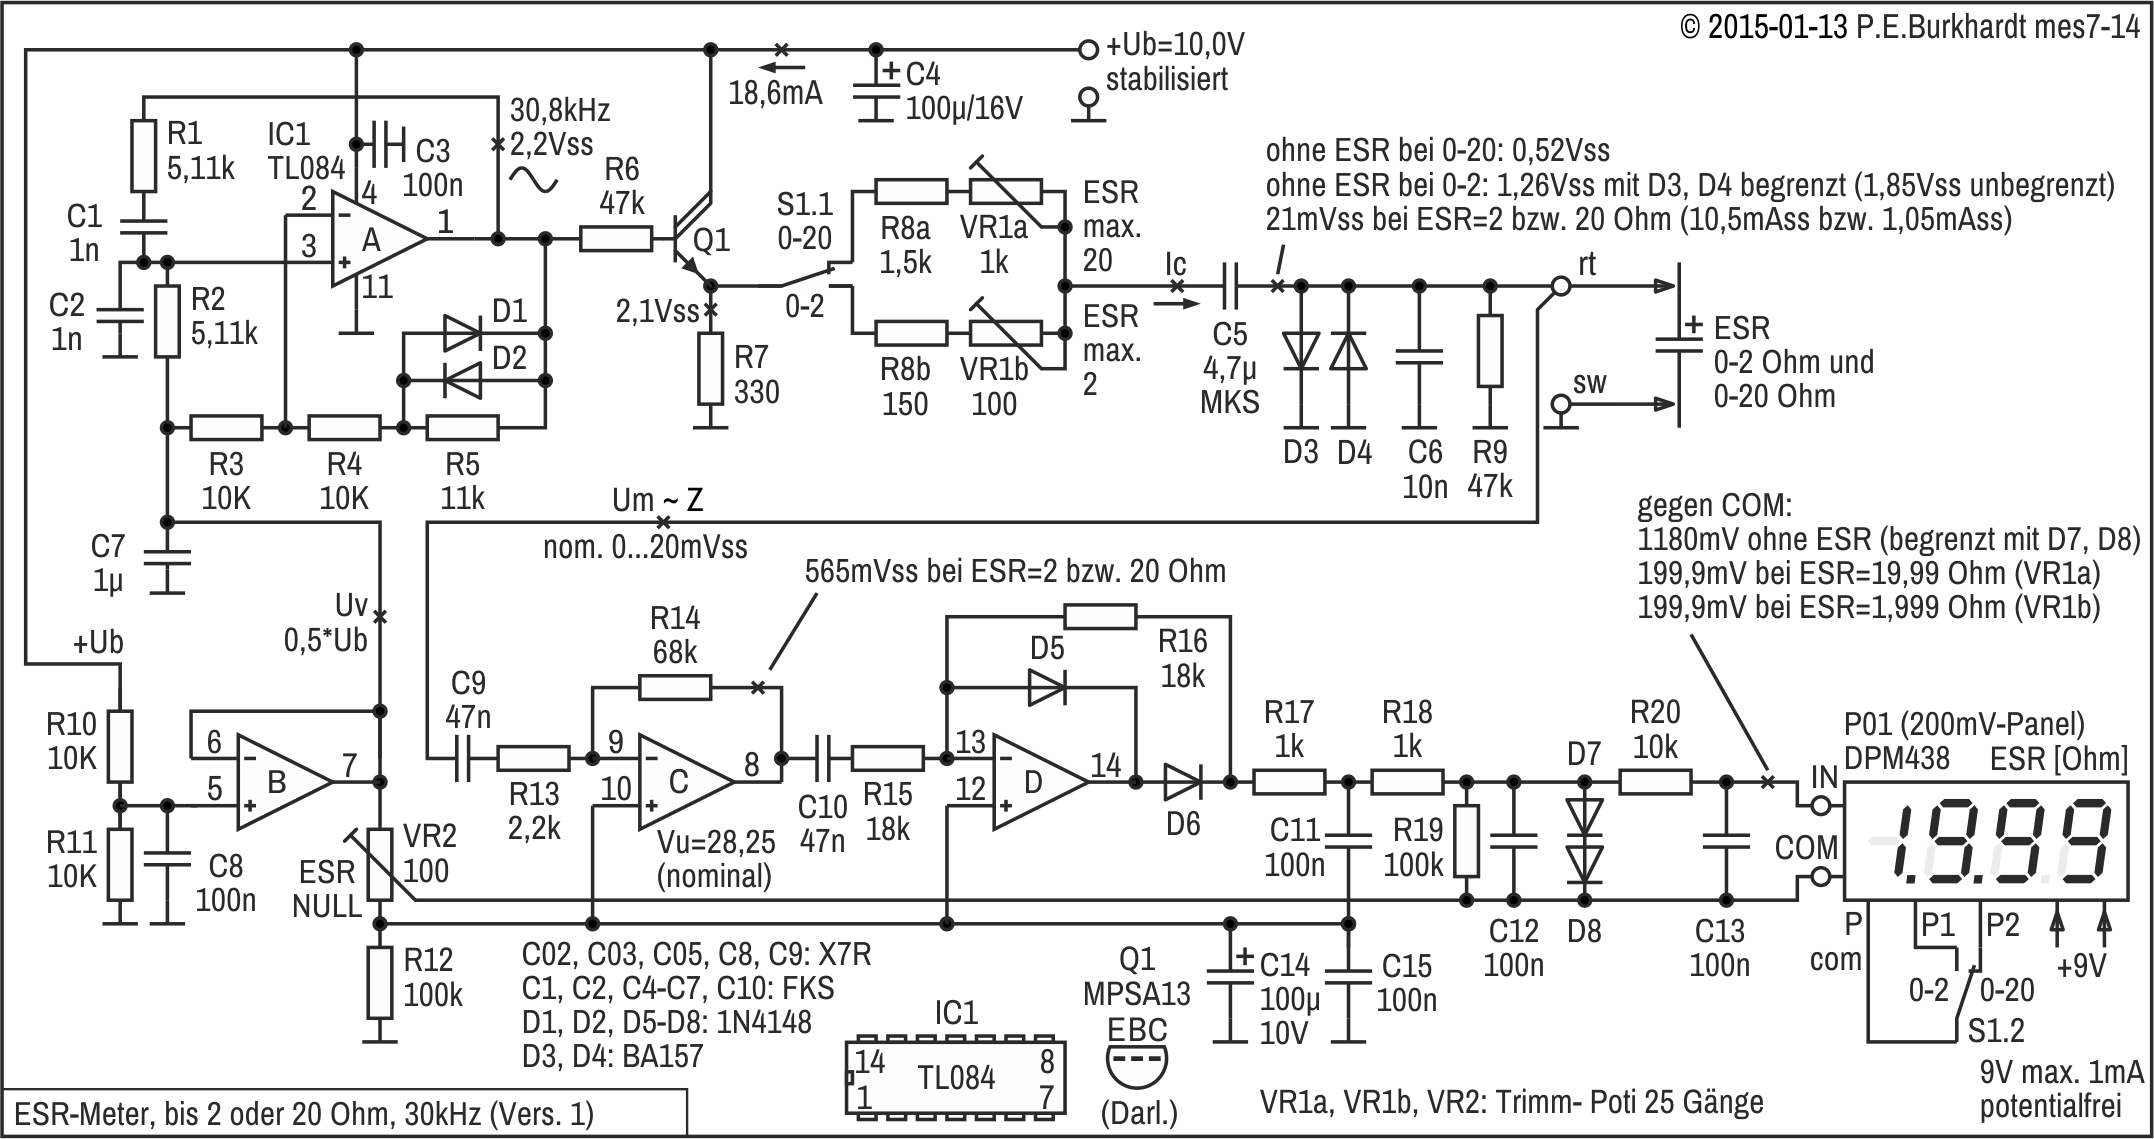 ESR-Messgerät (1), 30 kHz